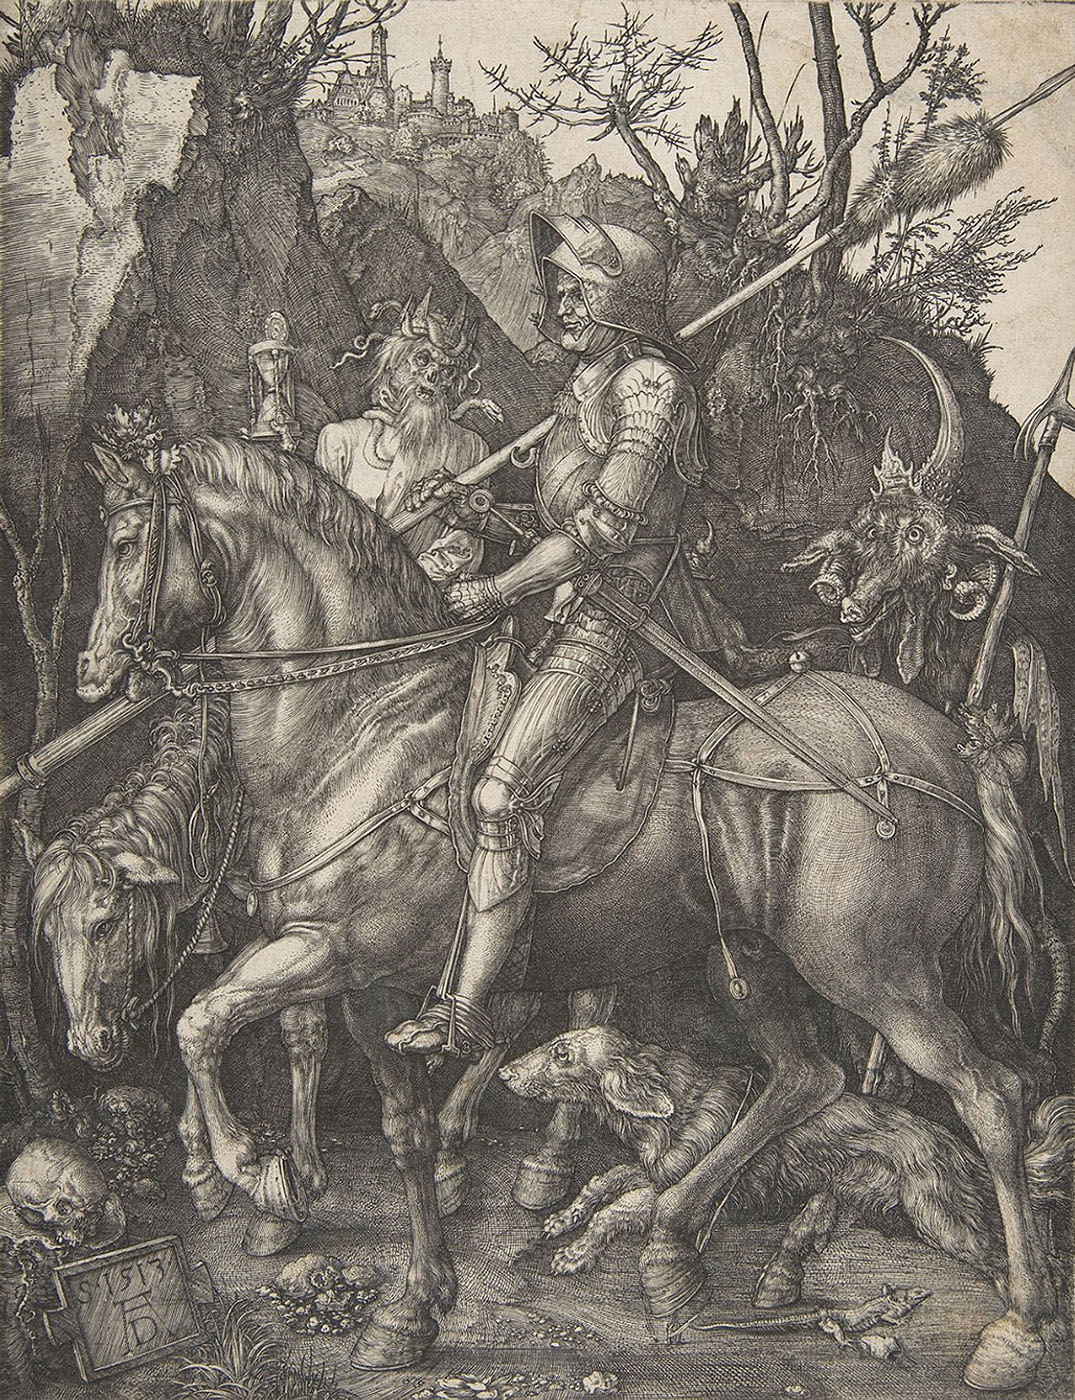 Альбрехт. Дюрер. "Рыцарь, смерть и дьявол". 1513.